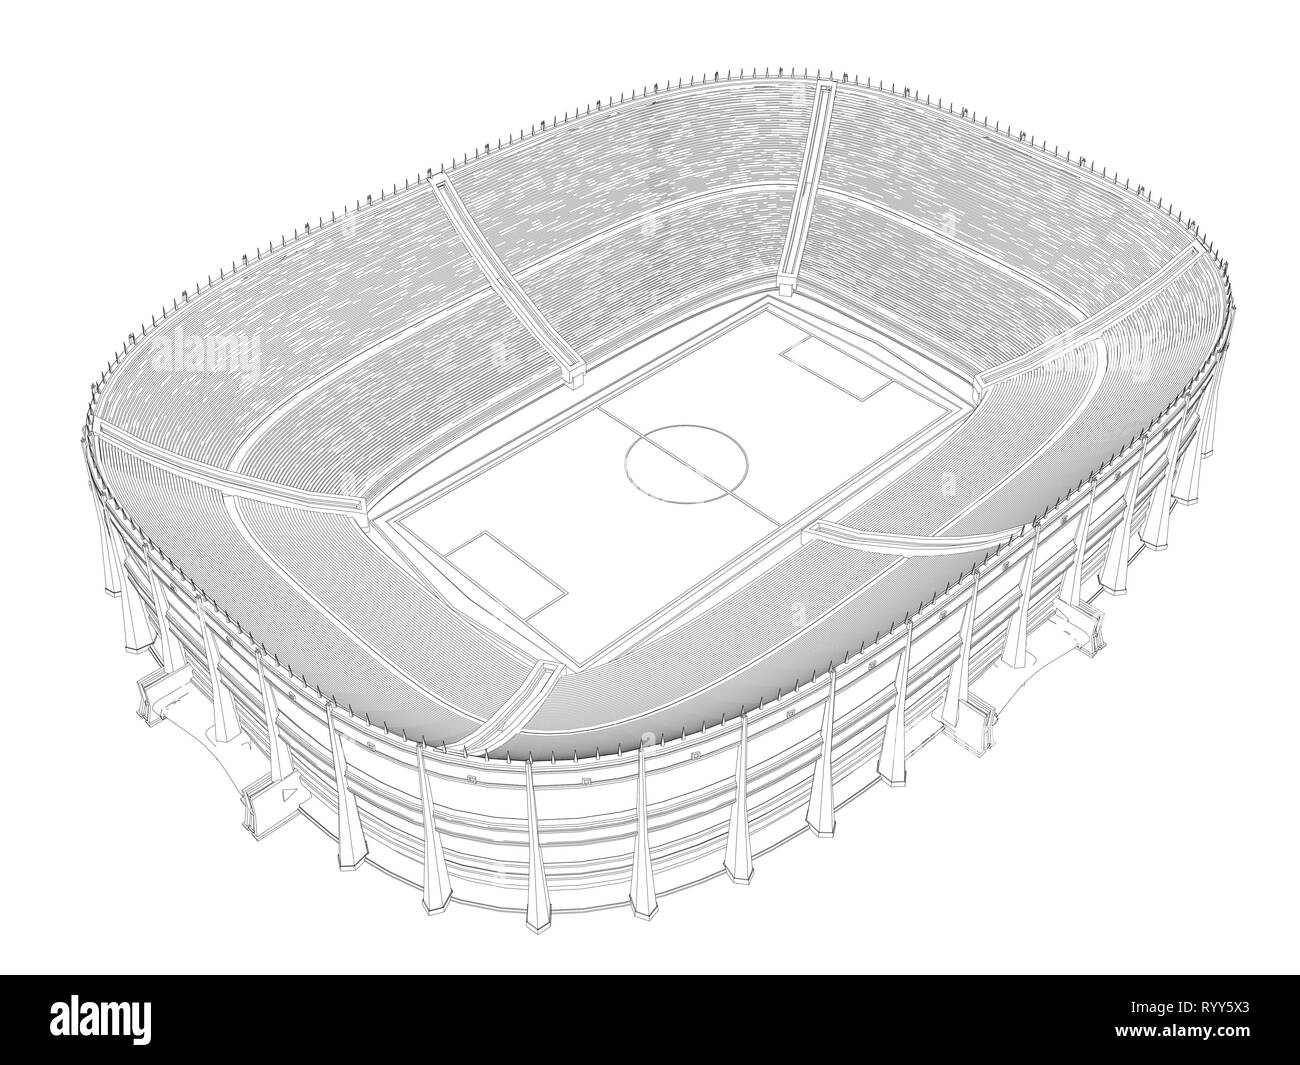 Kontur eines großen Stadion für den Fußball. 3D. Isometrische Ansicht. Vector Illustration Stock Vektor